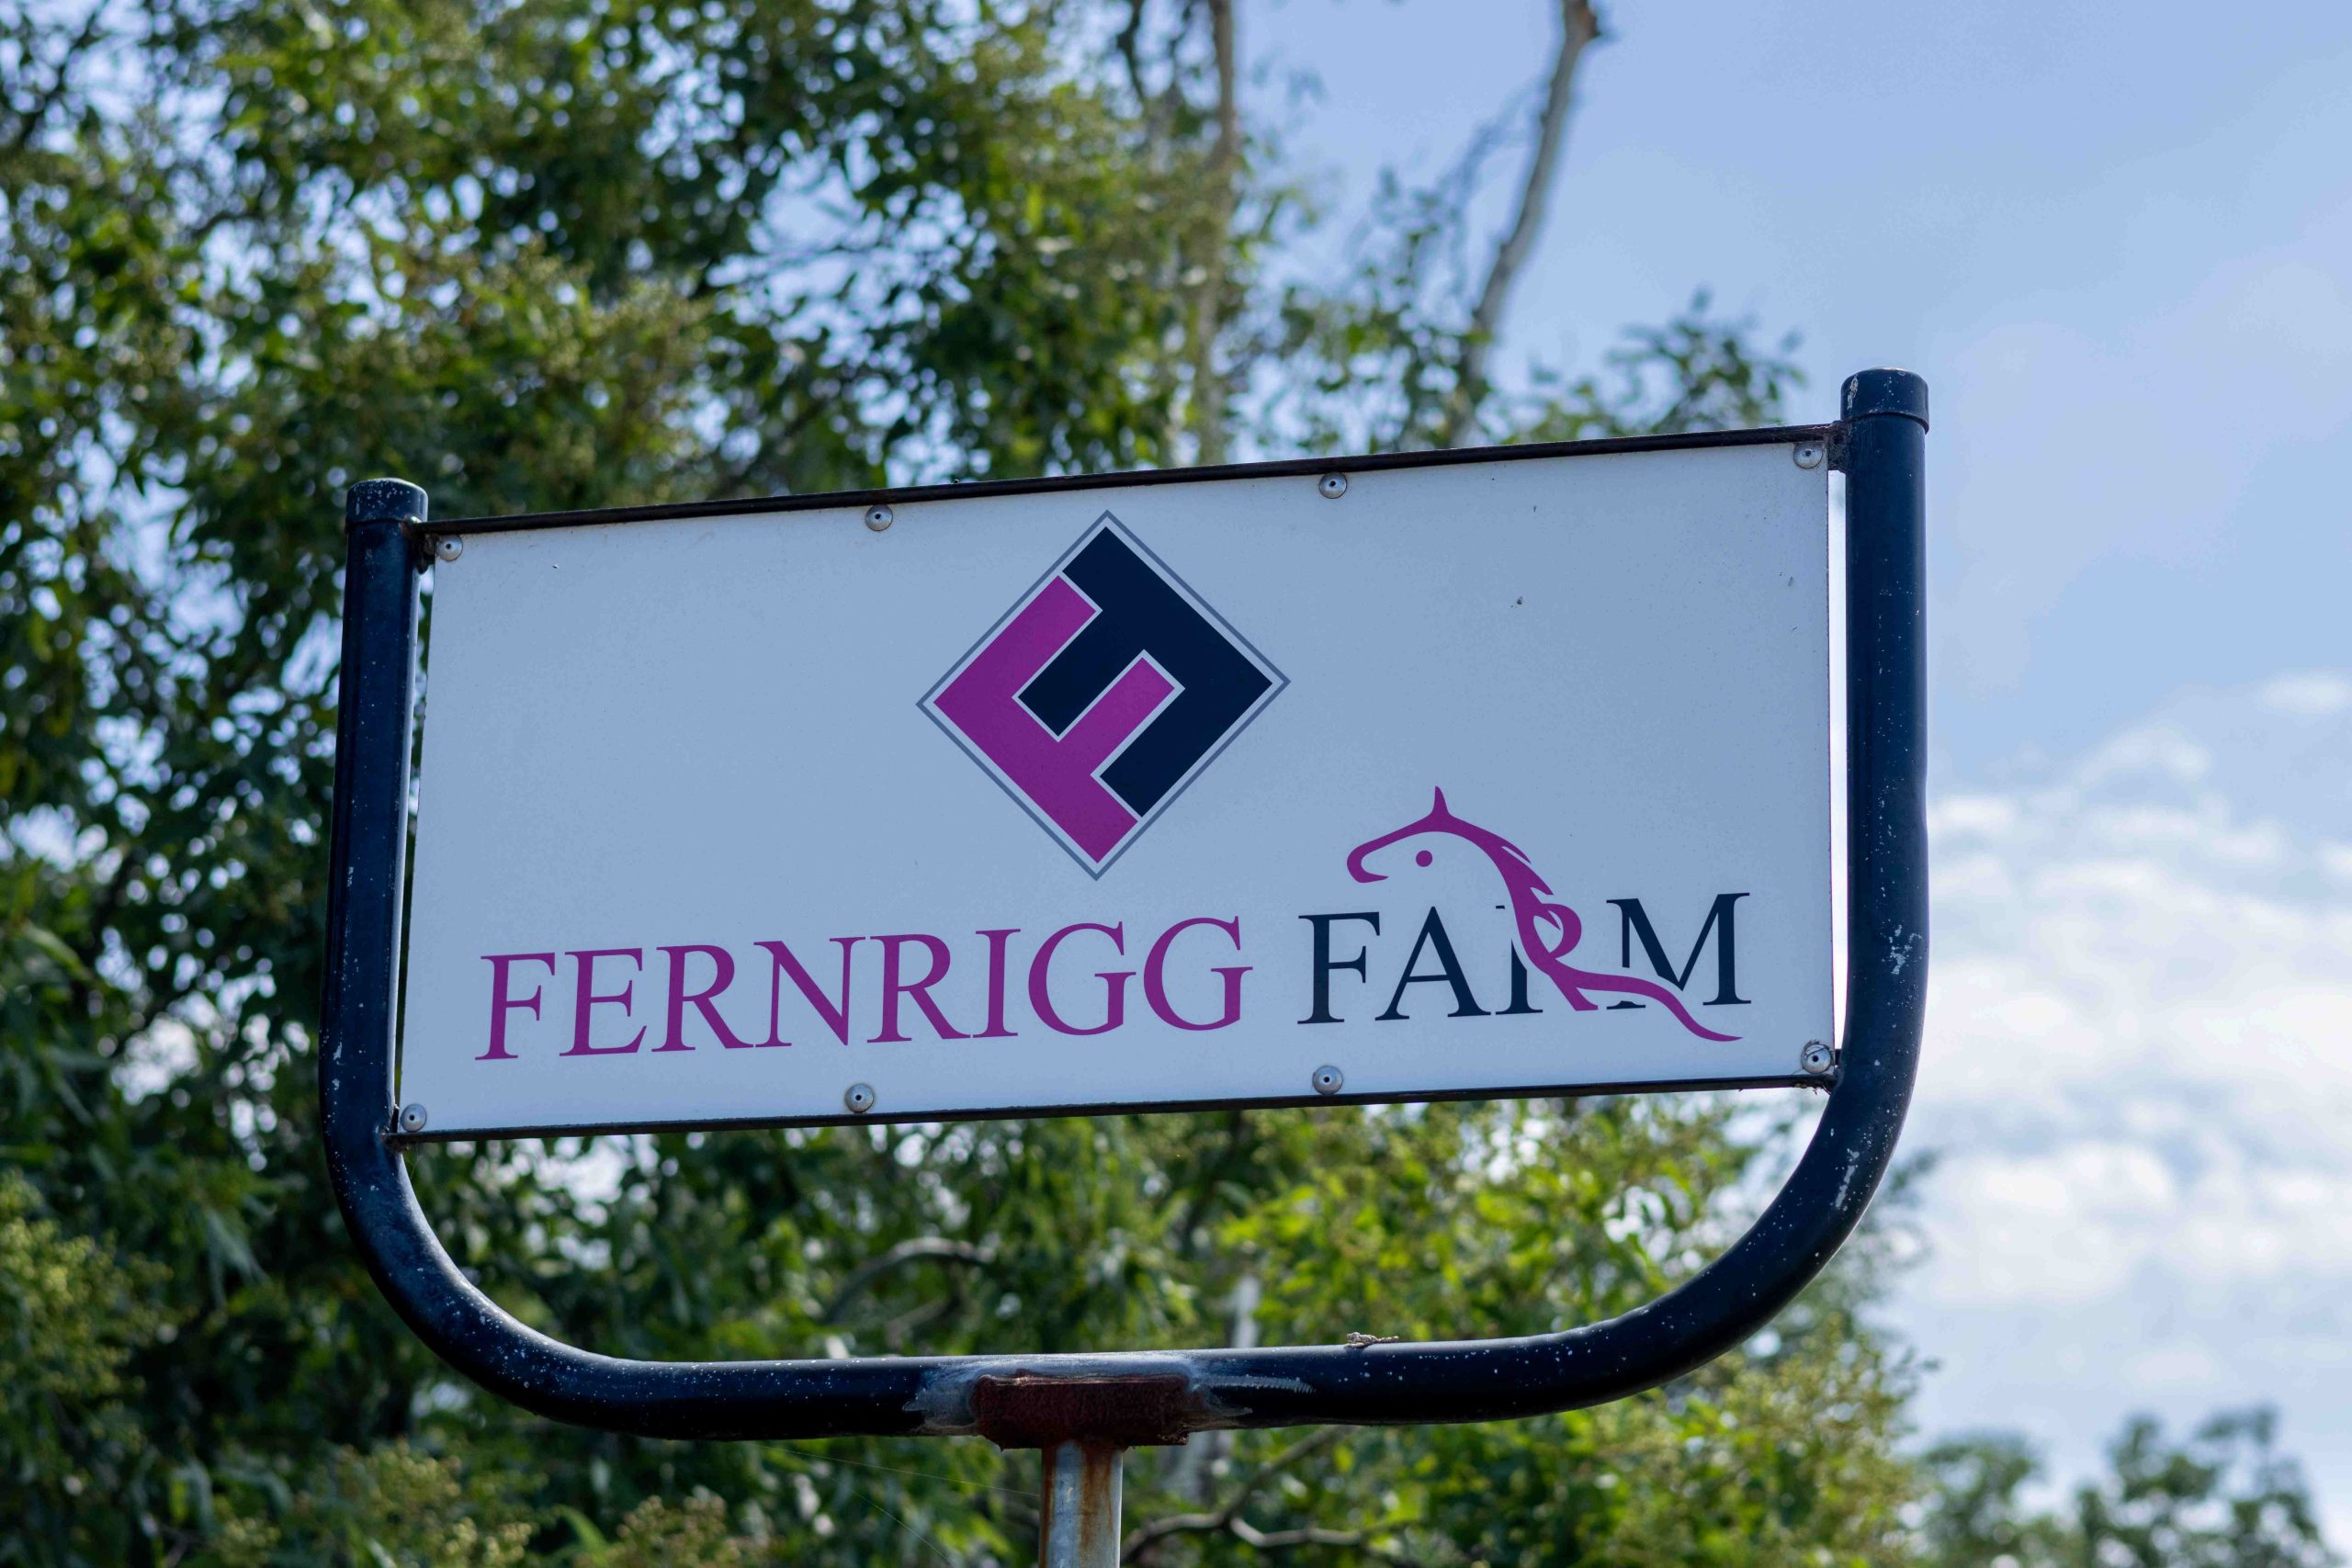 Fernrigg Farm boutique thoroughbred stud